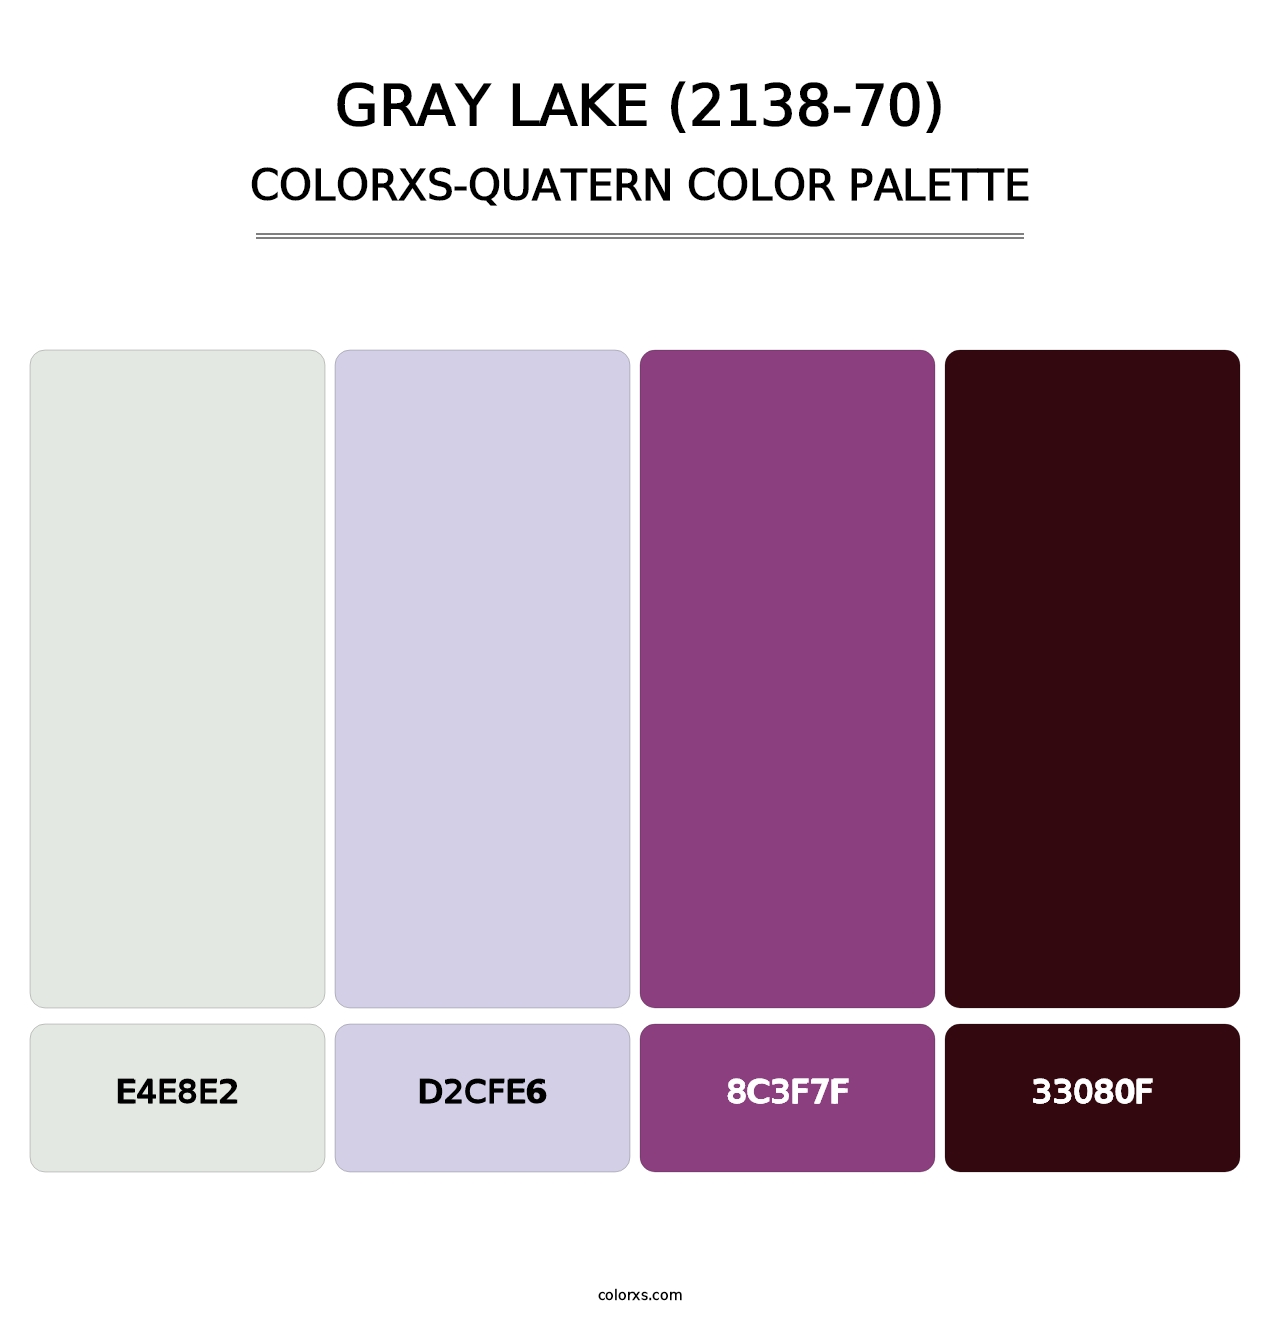 Gray Lake (2138-70) - Colorxs Quatern Palette